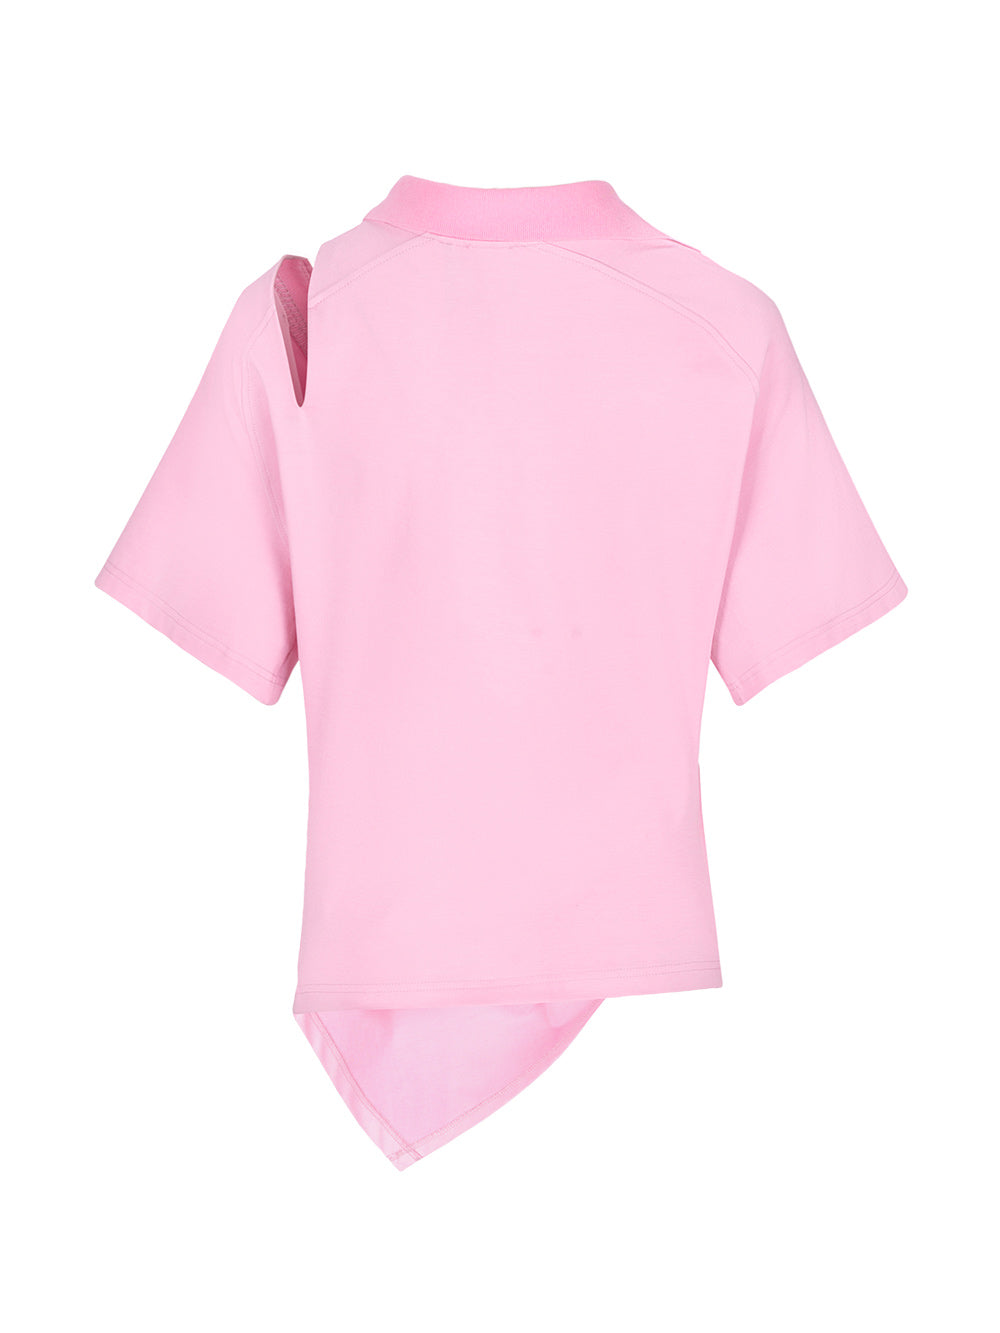 MUKZIN Pink Sports POLO T-Shirt